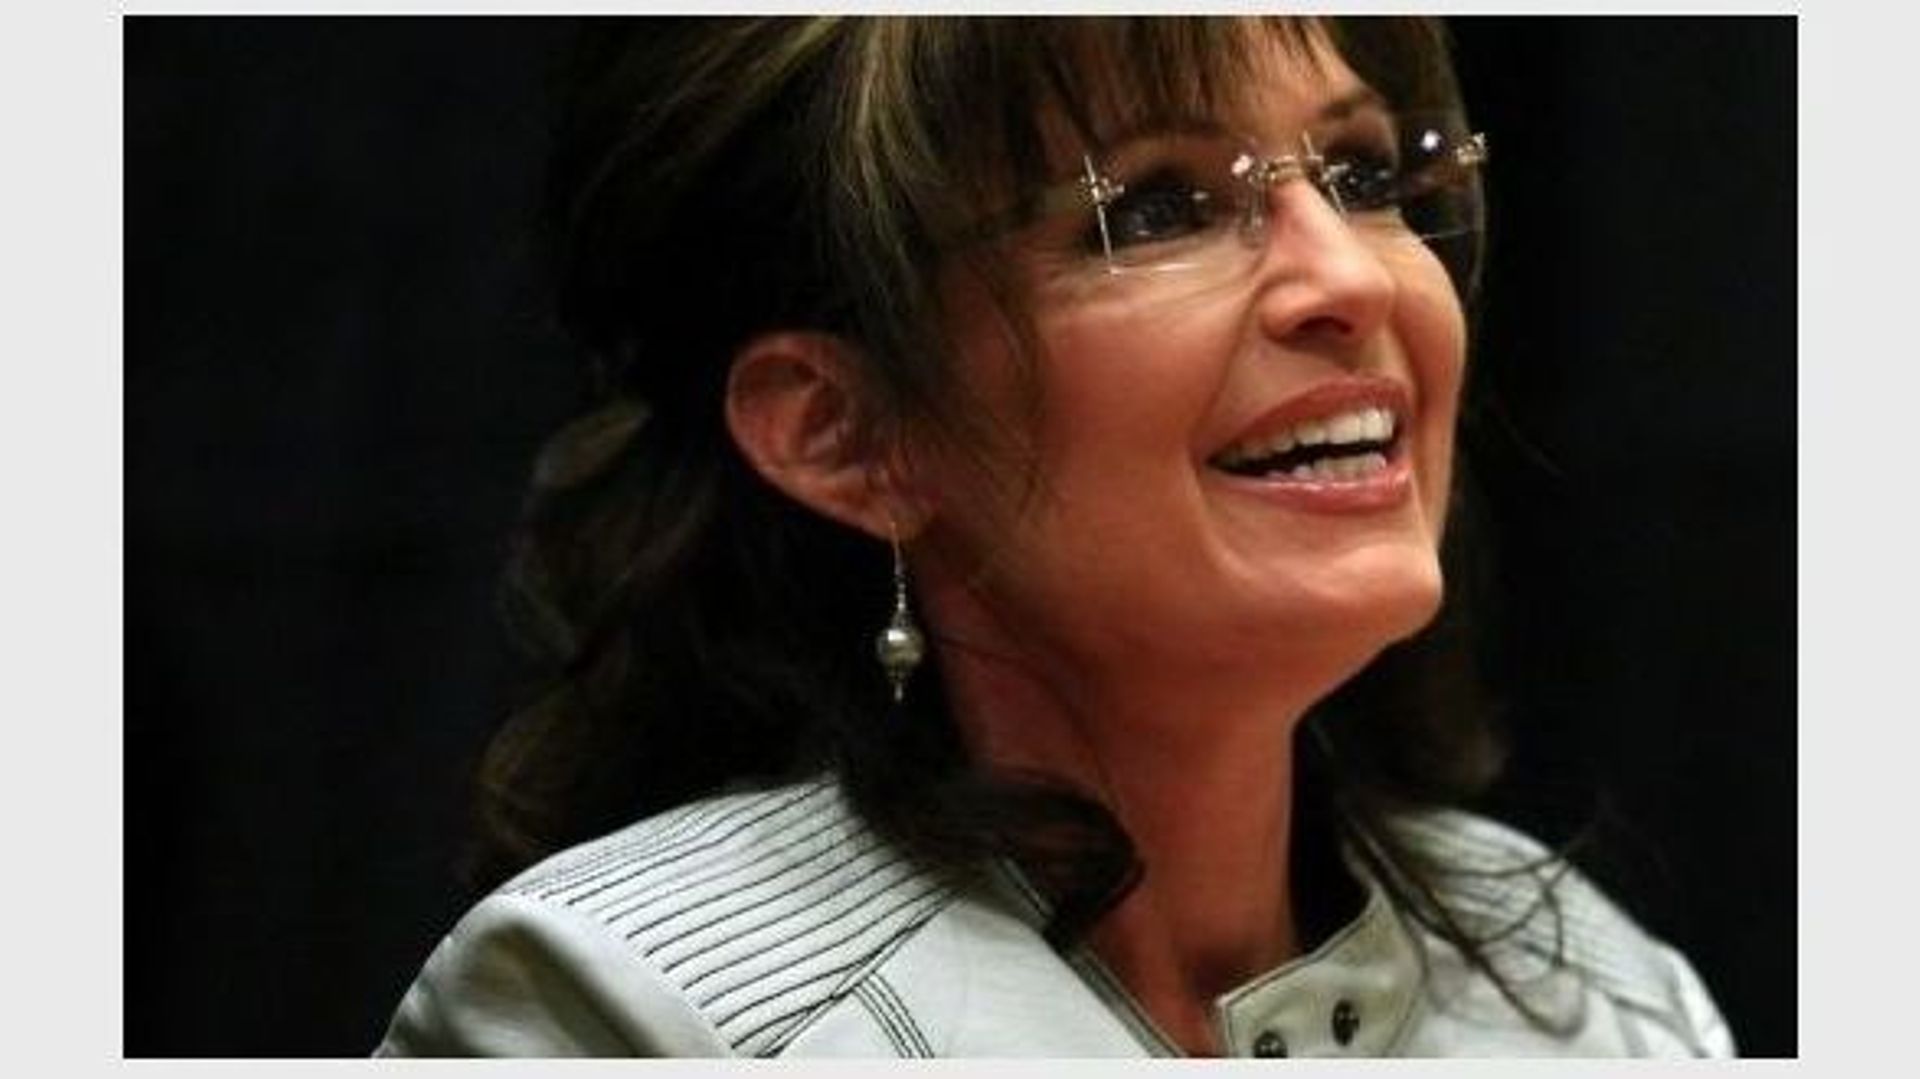 Fusillade: Obama en Arizona, Palin dénonce une "chasse aux sorcières"